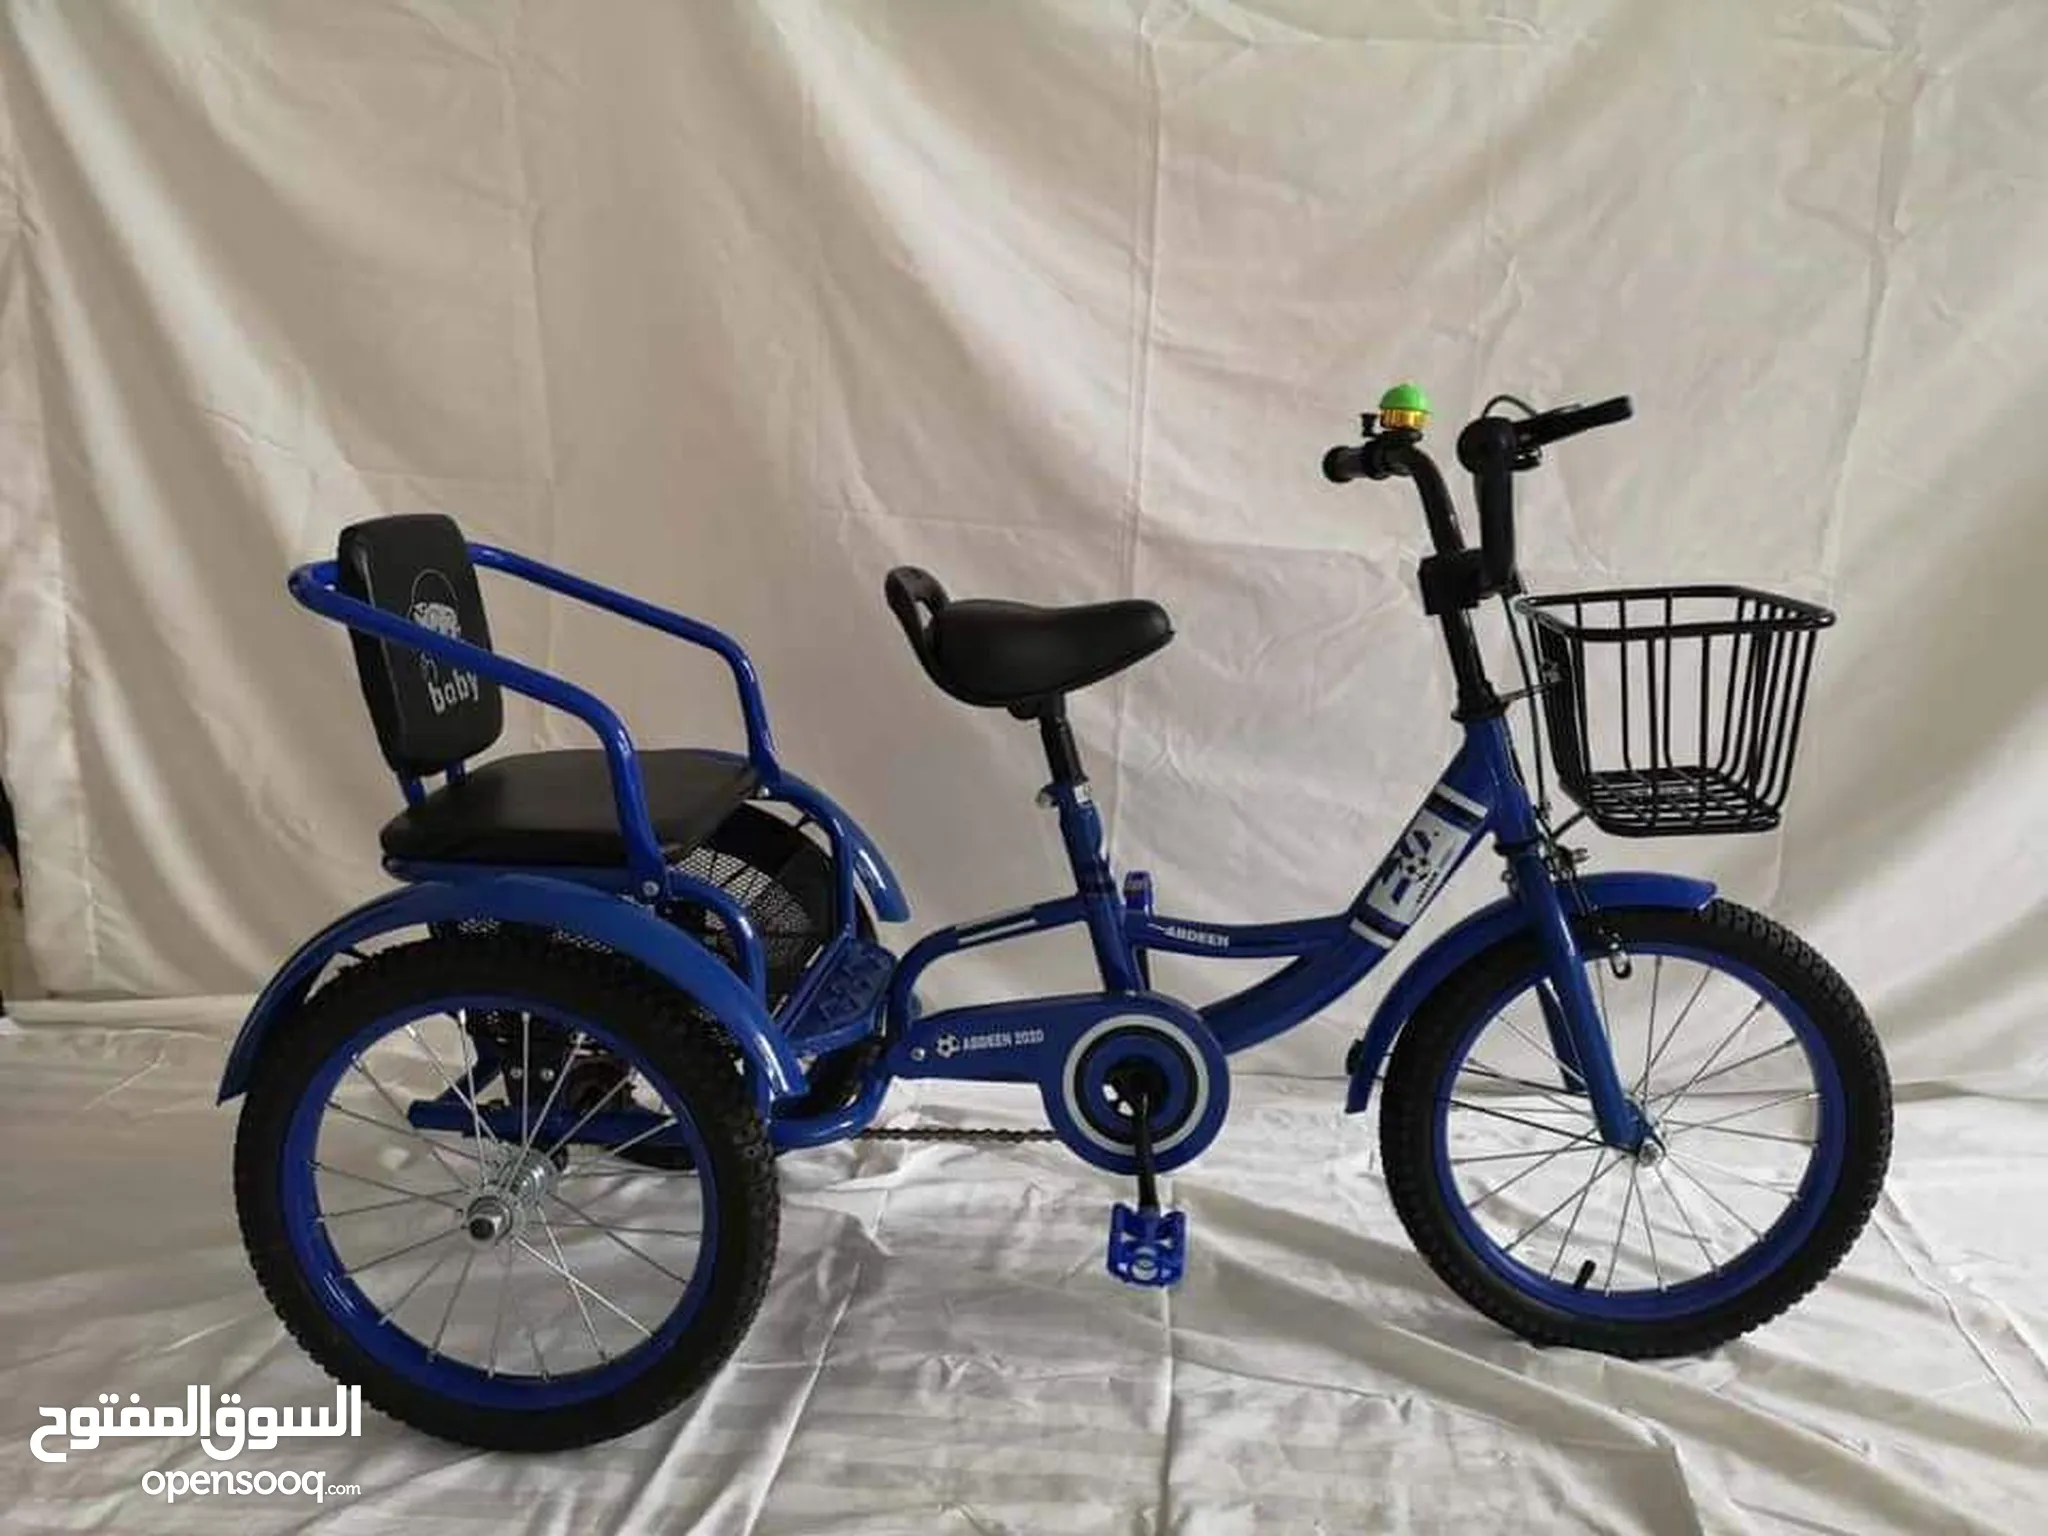 دراجات هوائية للبيع : دراجات على الطرق : جبلية : للأطفال : قطع غيار  واكسسوار : ارخص الاسعار في بني سويف | السوق المفتوح